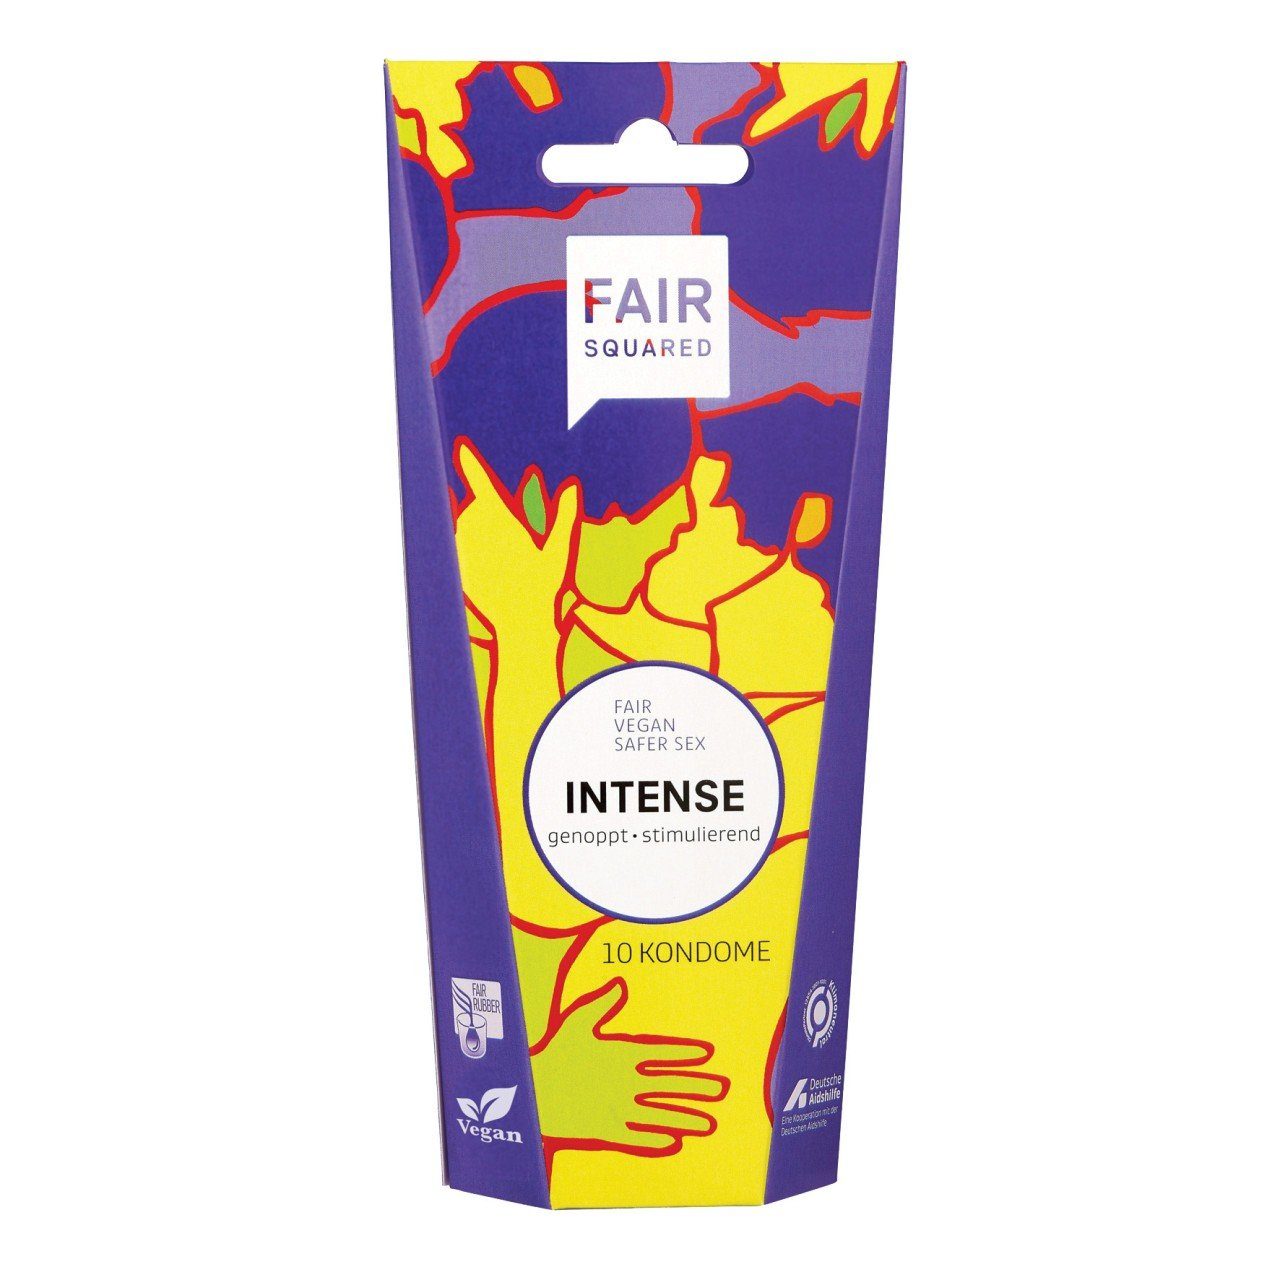 St. FAIR Intense 10 Fair SQUARED Einhand-Kondome Squared